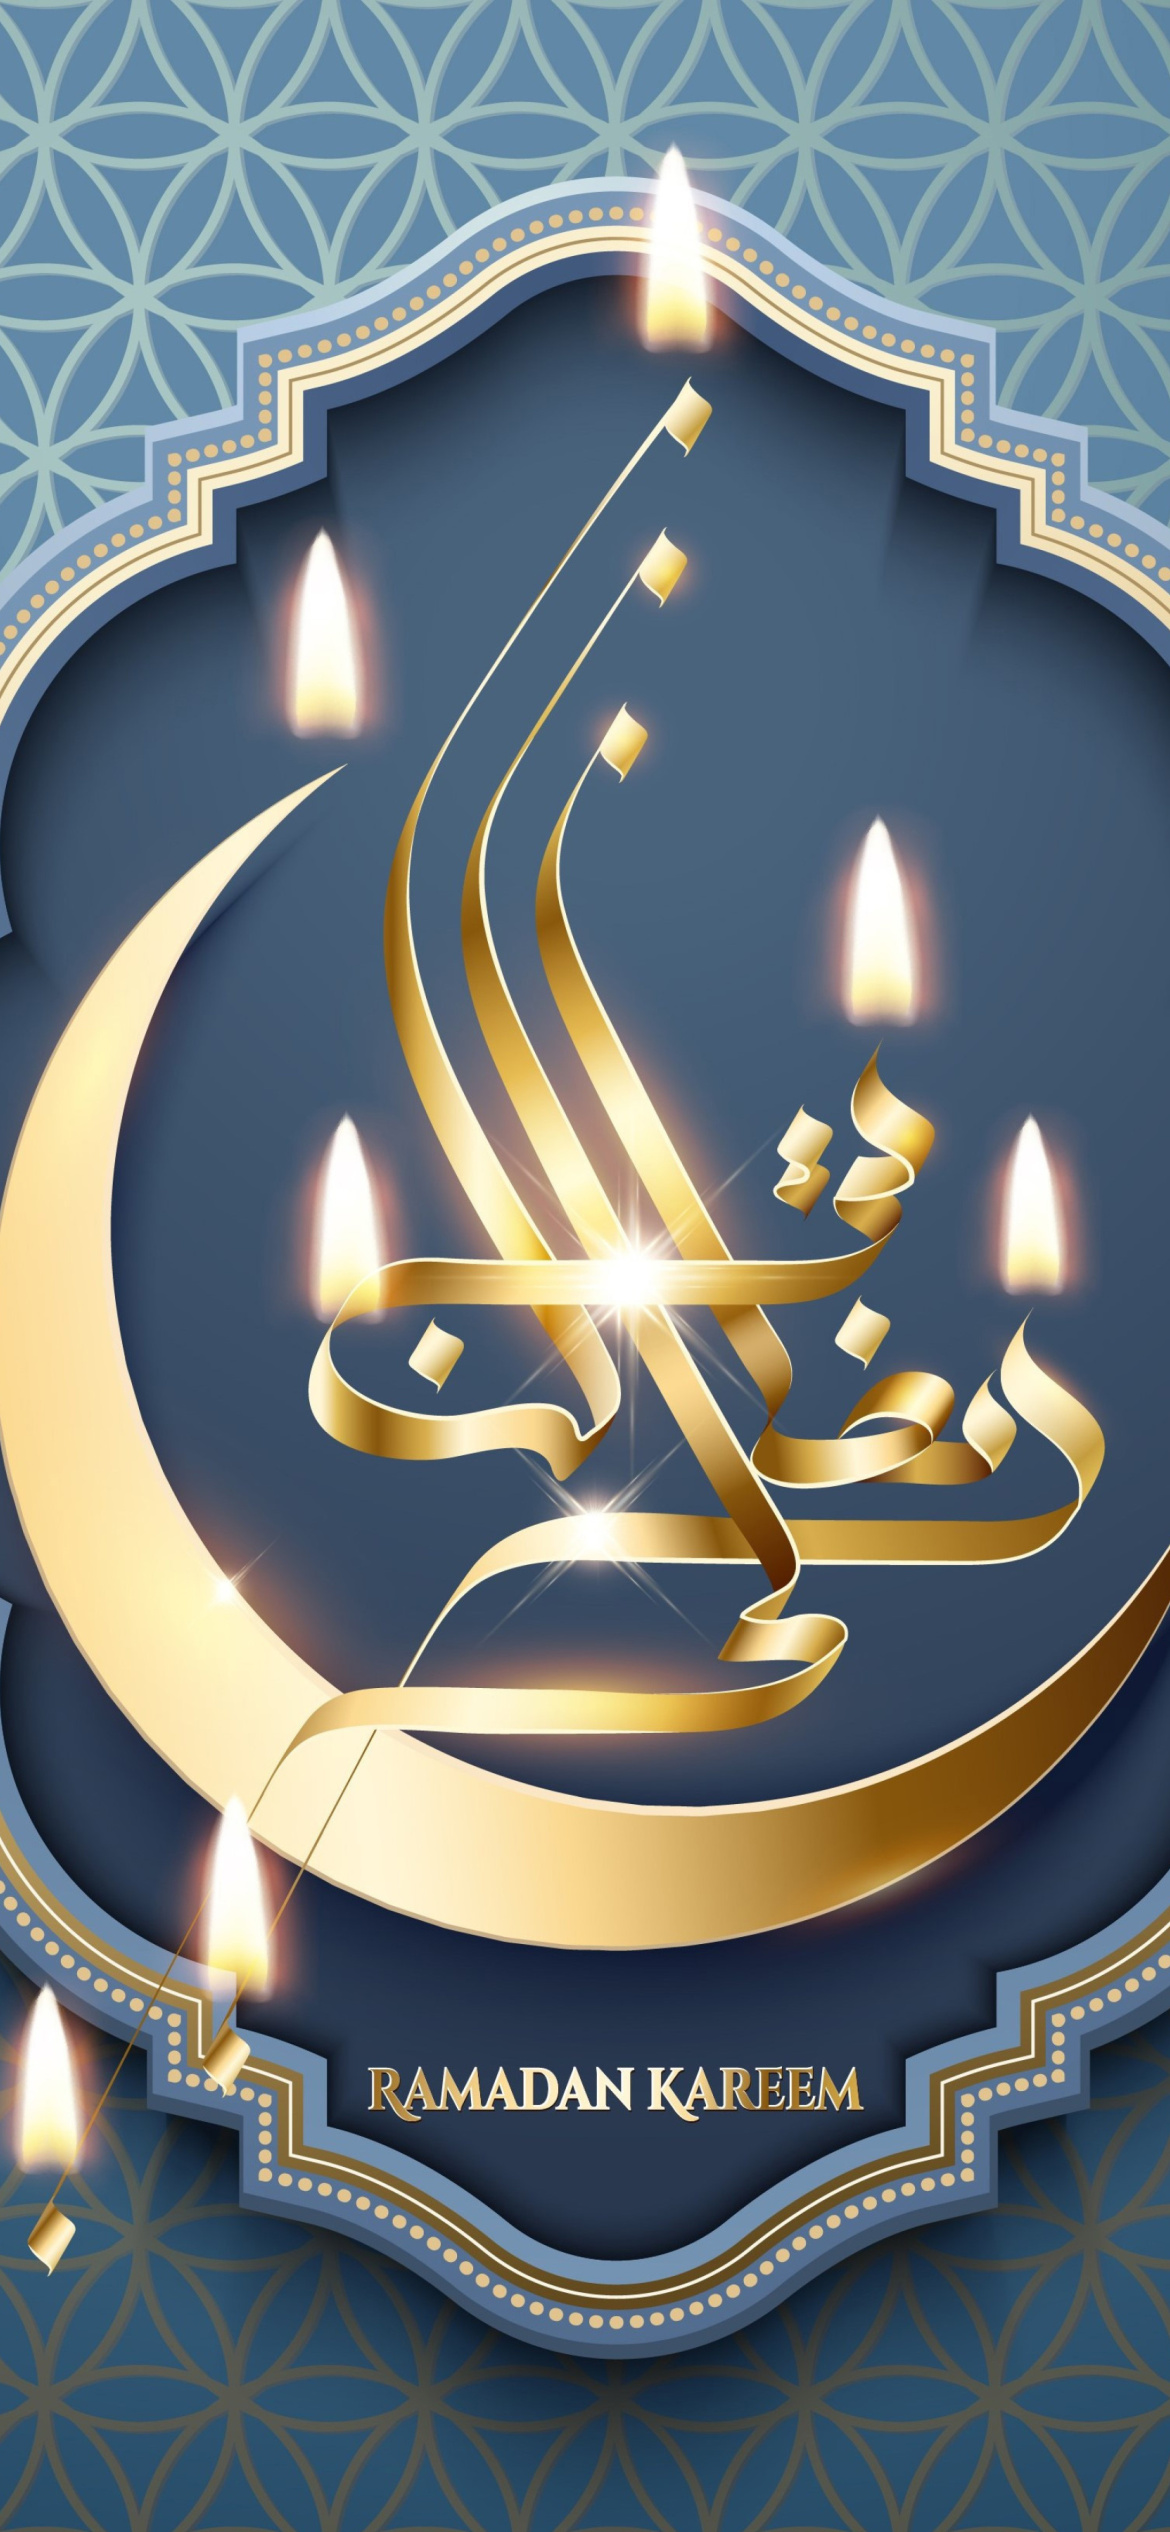 Ramadan Prayer Times Iraq, Iran screenshot #1 1170x2532